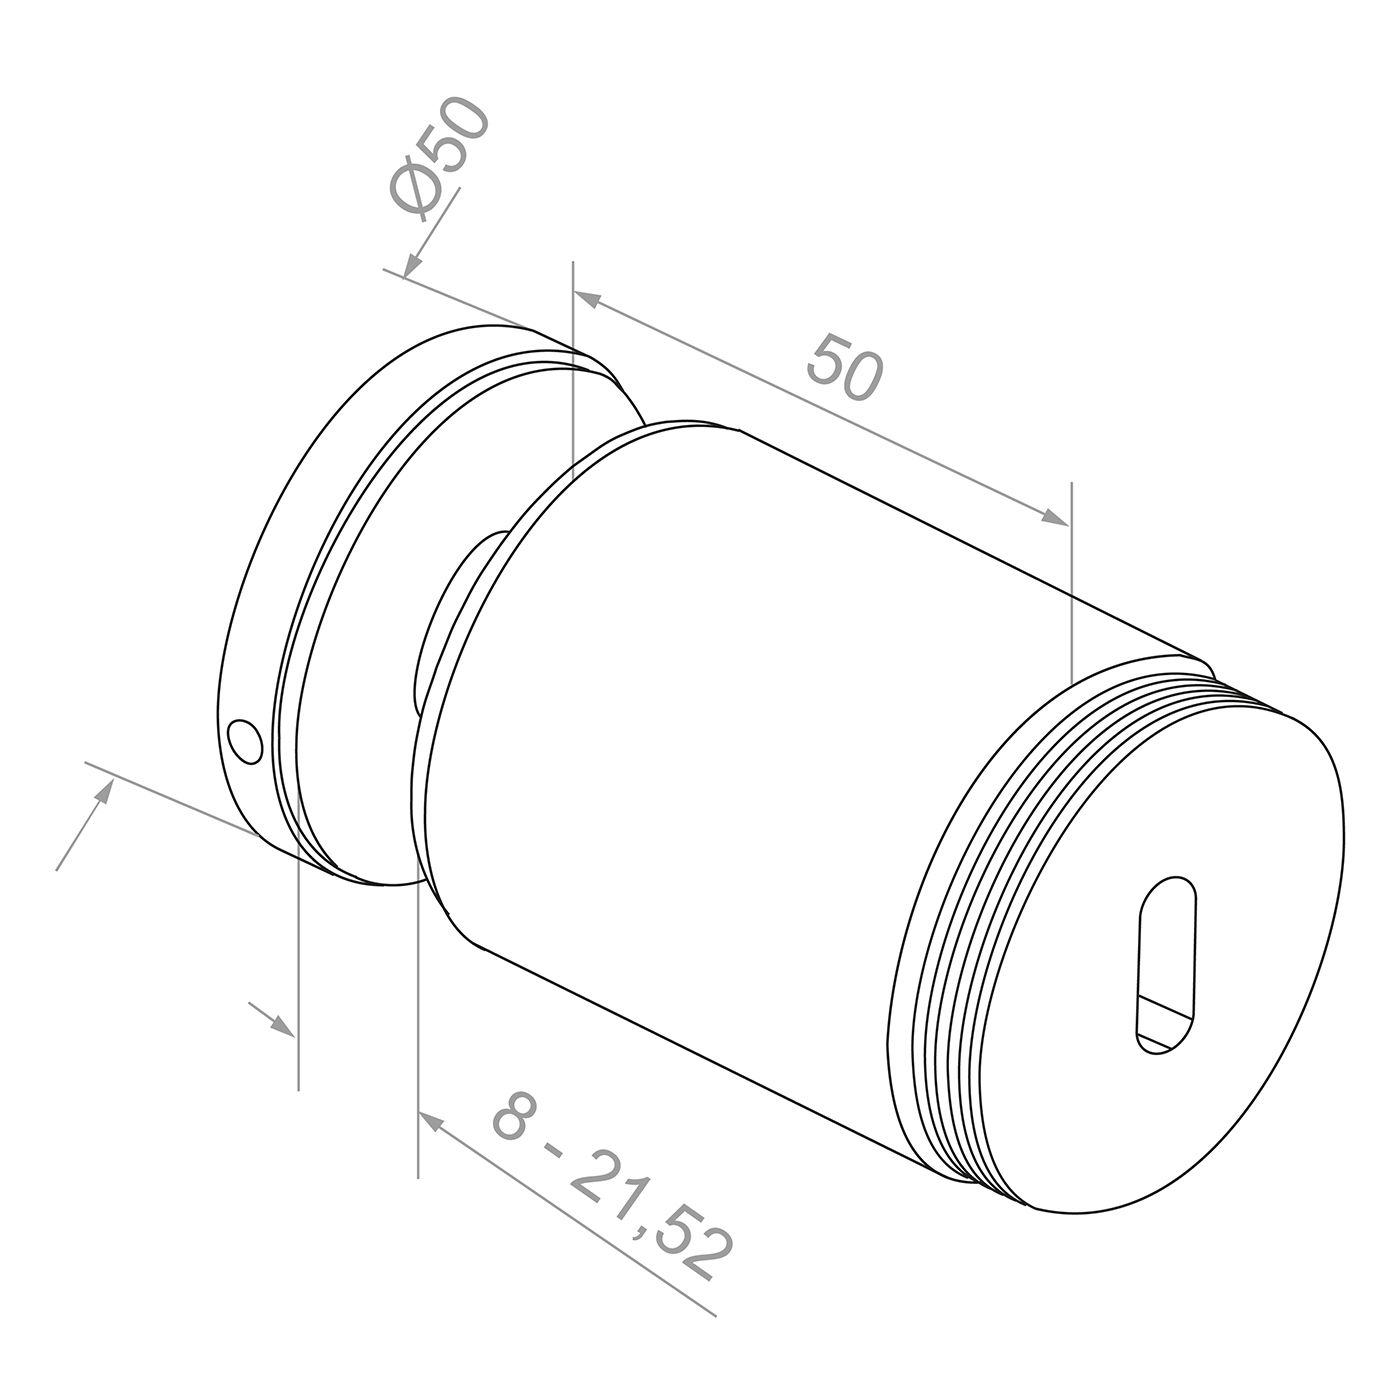 Uchwyt punktowy rotula do szkła o grubości 10,38-17,52 mm punktowy fi 50/50 mm, gwint M10 mocowany do powierzchni płaskiej, satyna